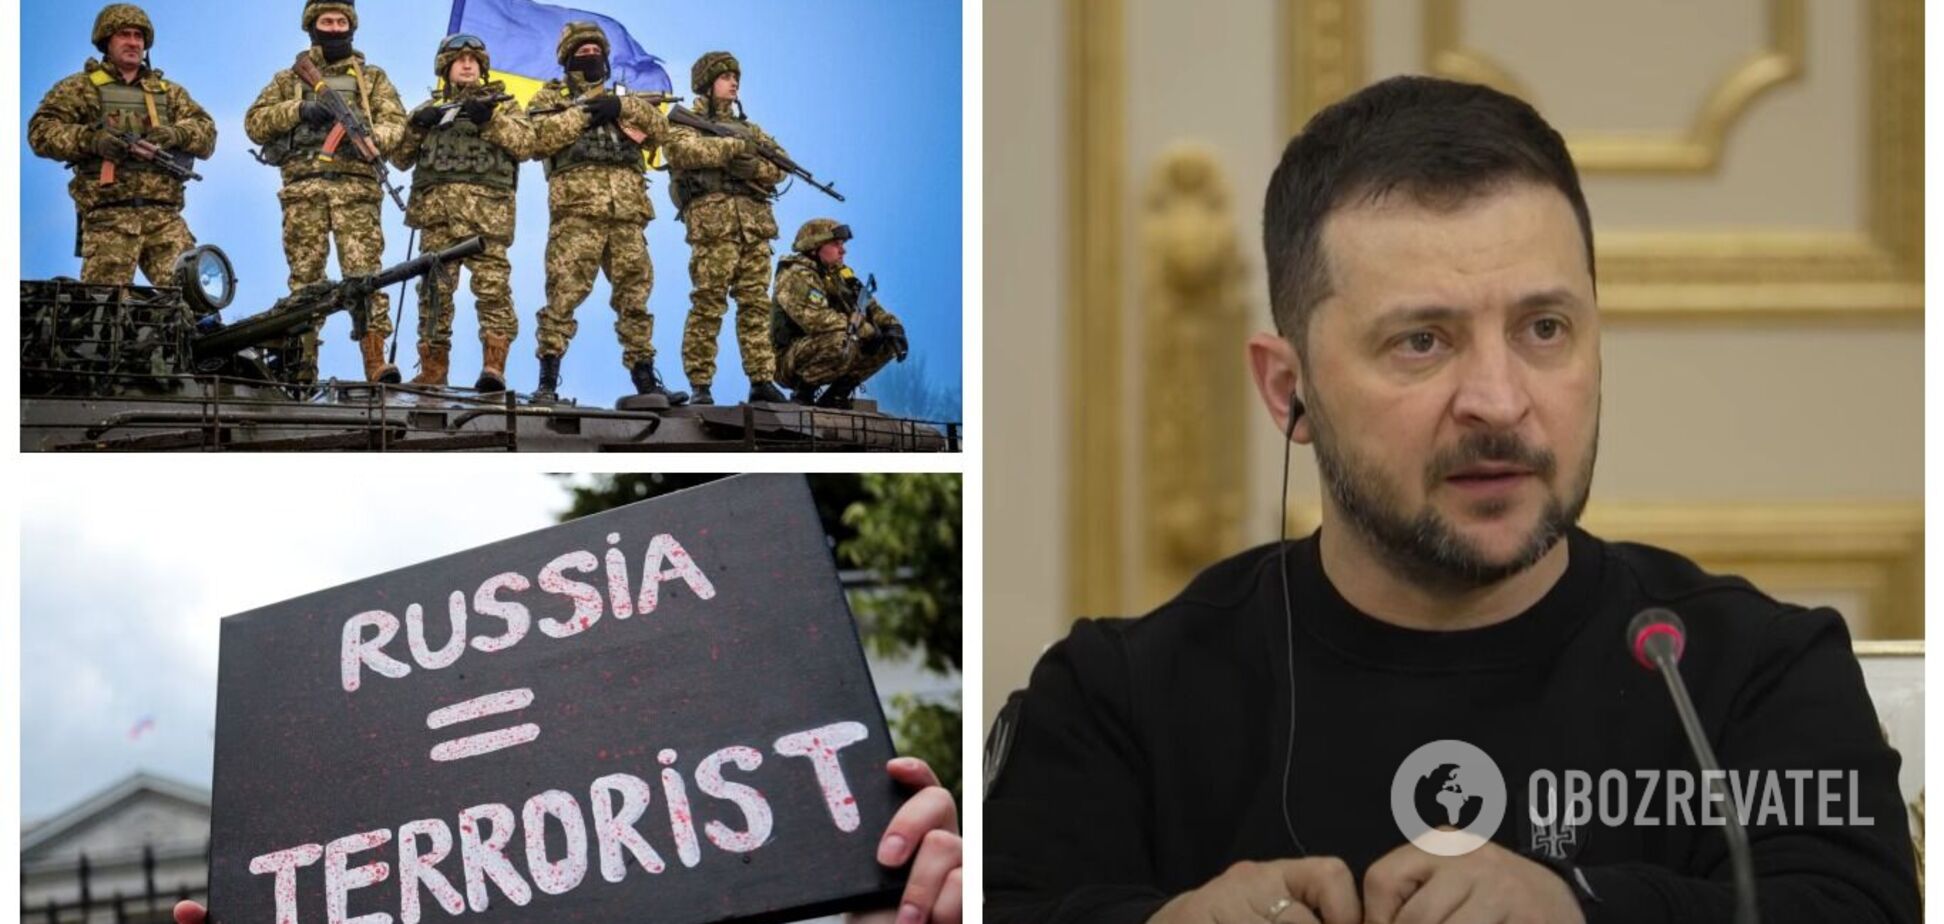 'Україна має перемогти': Зеленський пояснив, чому Кремль треба зупинити, і заявив про 'інформаційний фашизм' в РФ